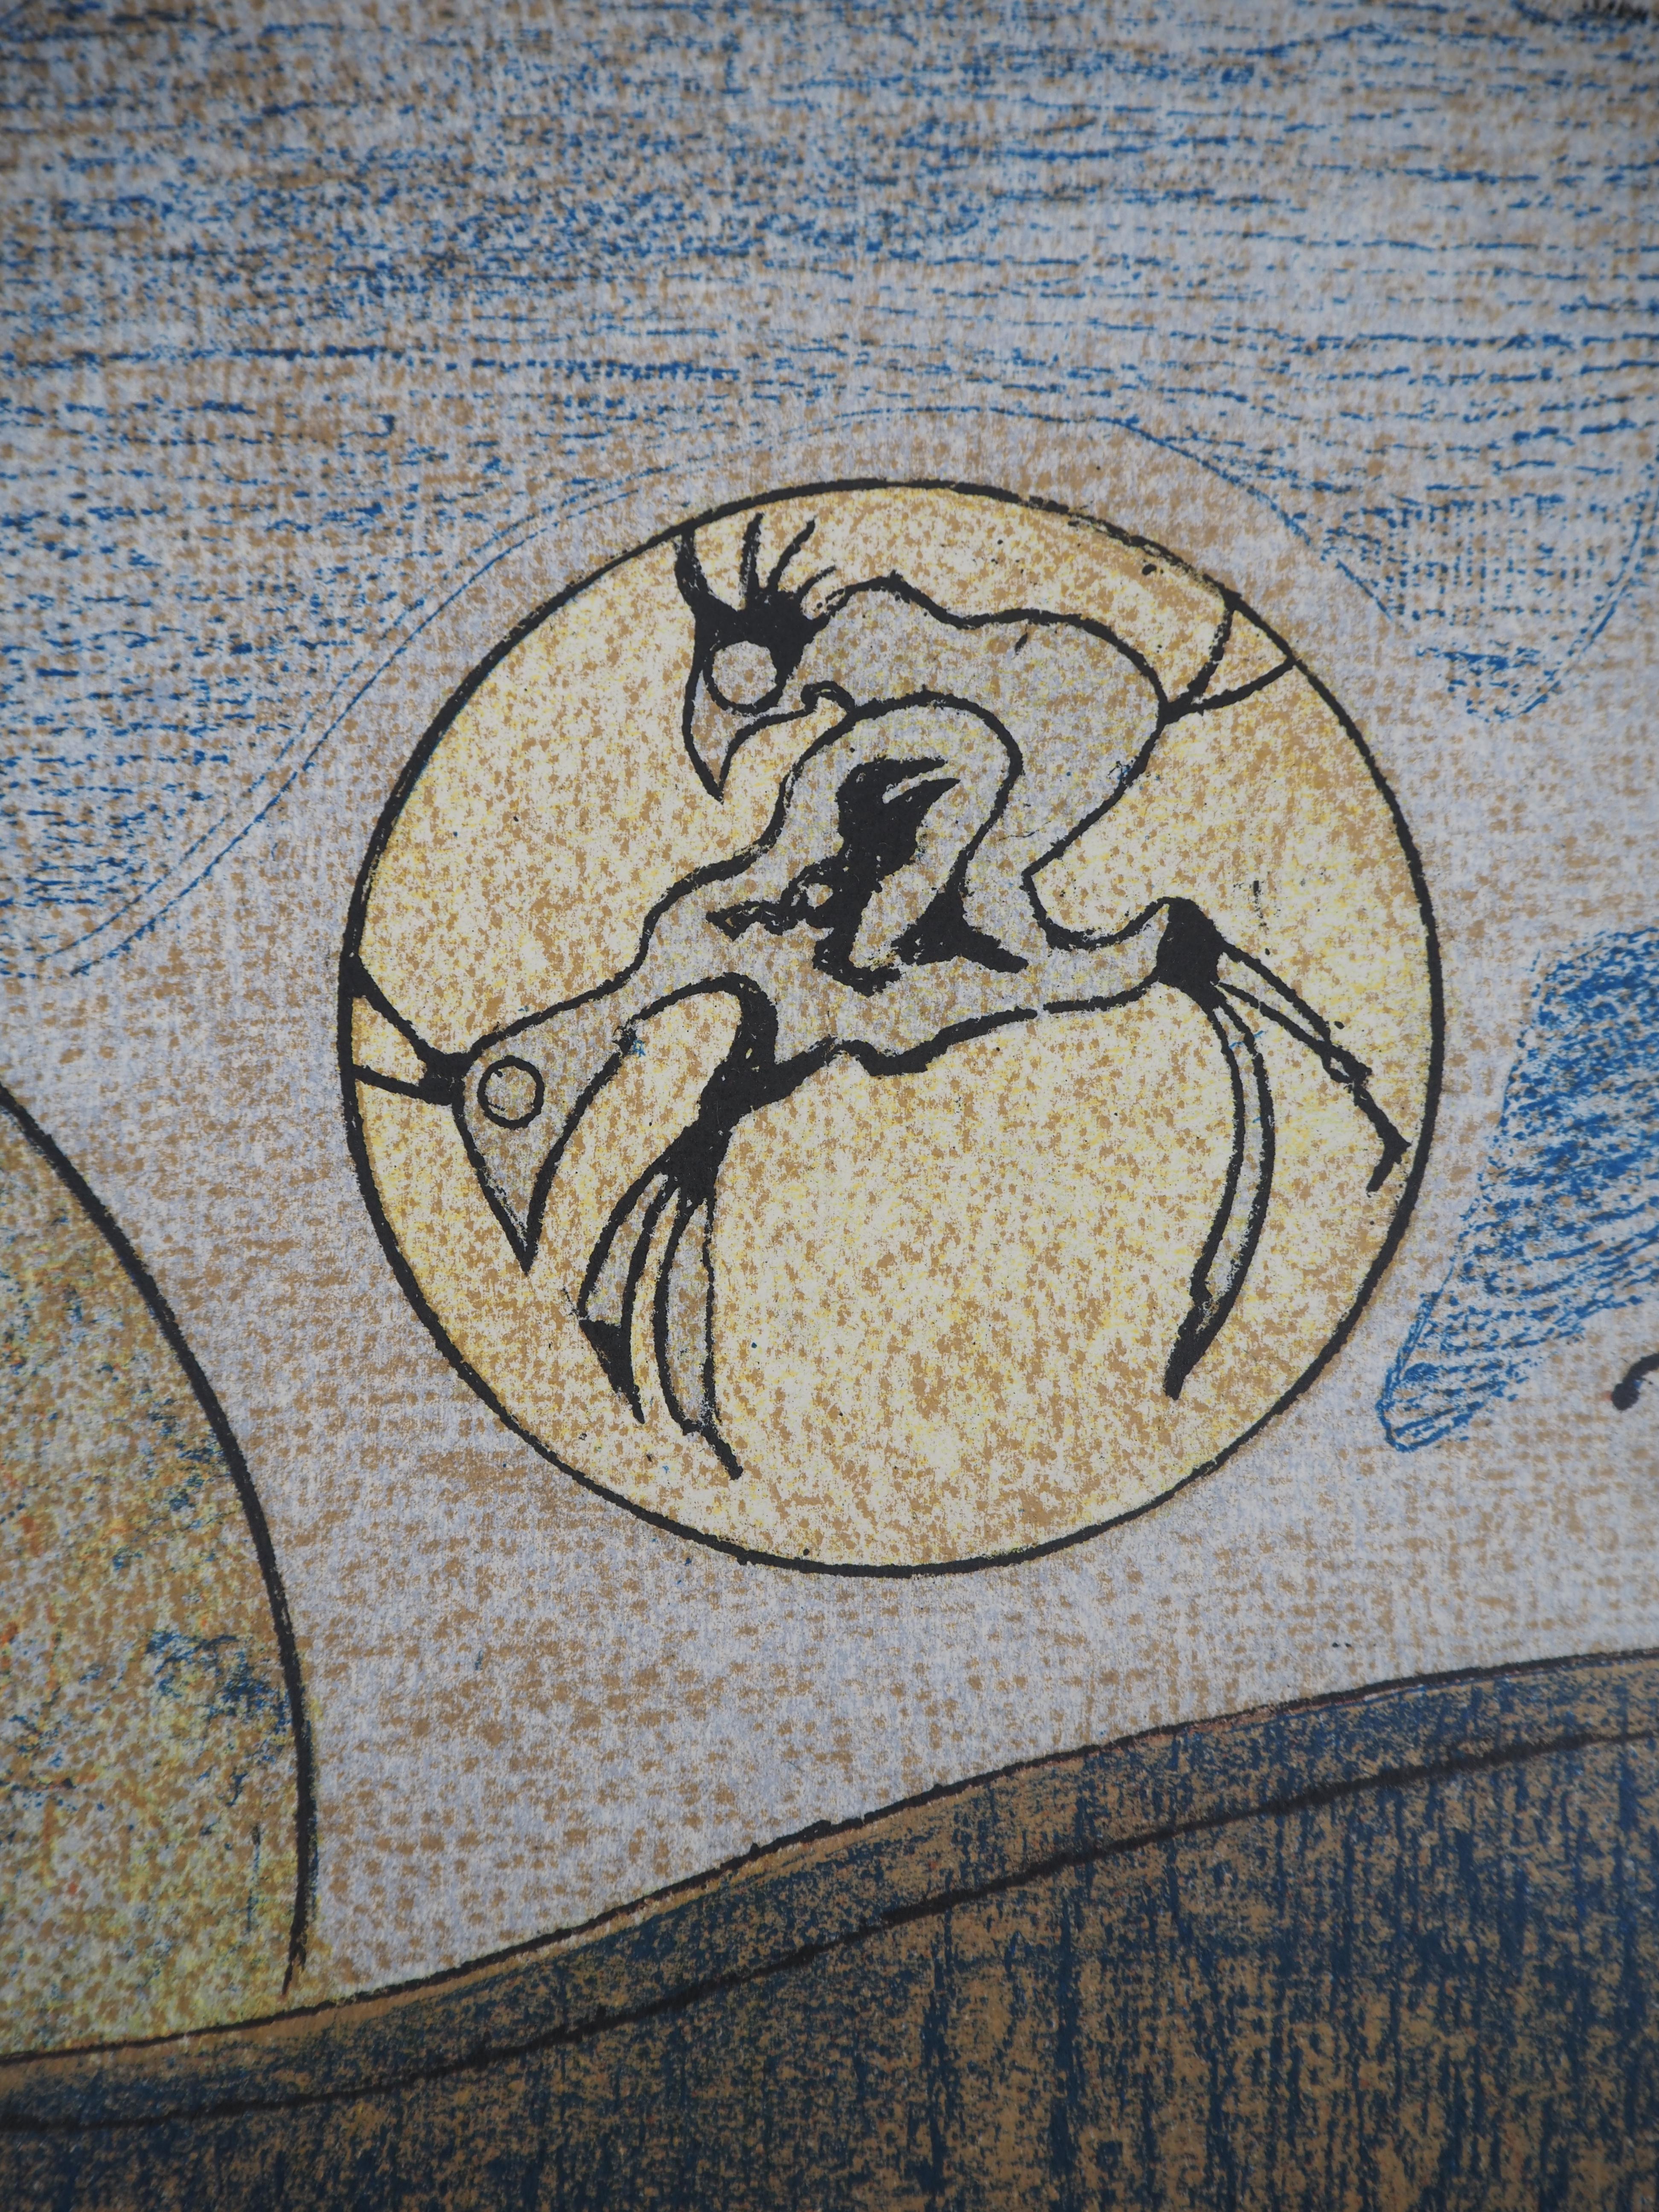 Max Ernst (1891-1976)
Surrealistischer Traum: Ein Paar Hähne, 1970

Original Farblithographie 
Gedruckte Unterschrift auf der Platte
Auf Arches Vellum 33,5 × 61 cm (ca. 13 x 24 Zoll)

REFERENZEN : Werkverzeichnis 